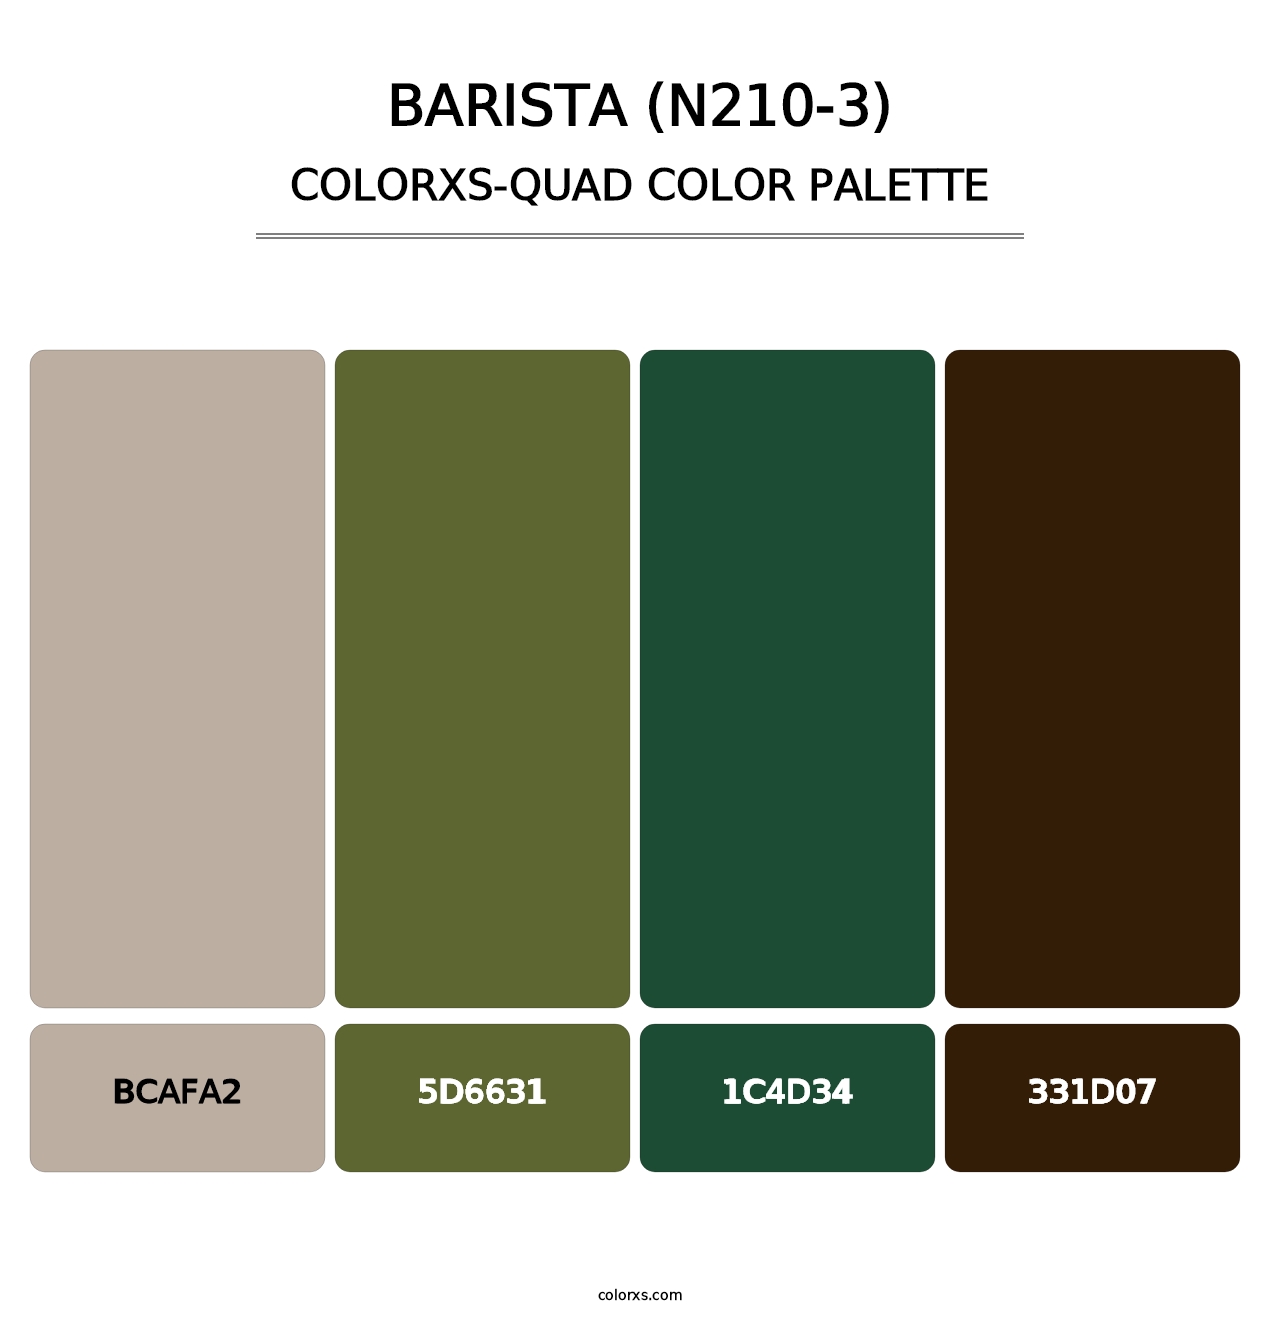 Barista (N210-3) - Colorxs Quad Palette